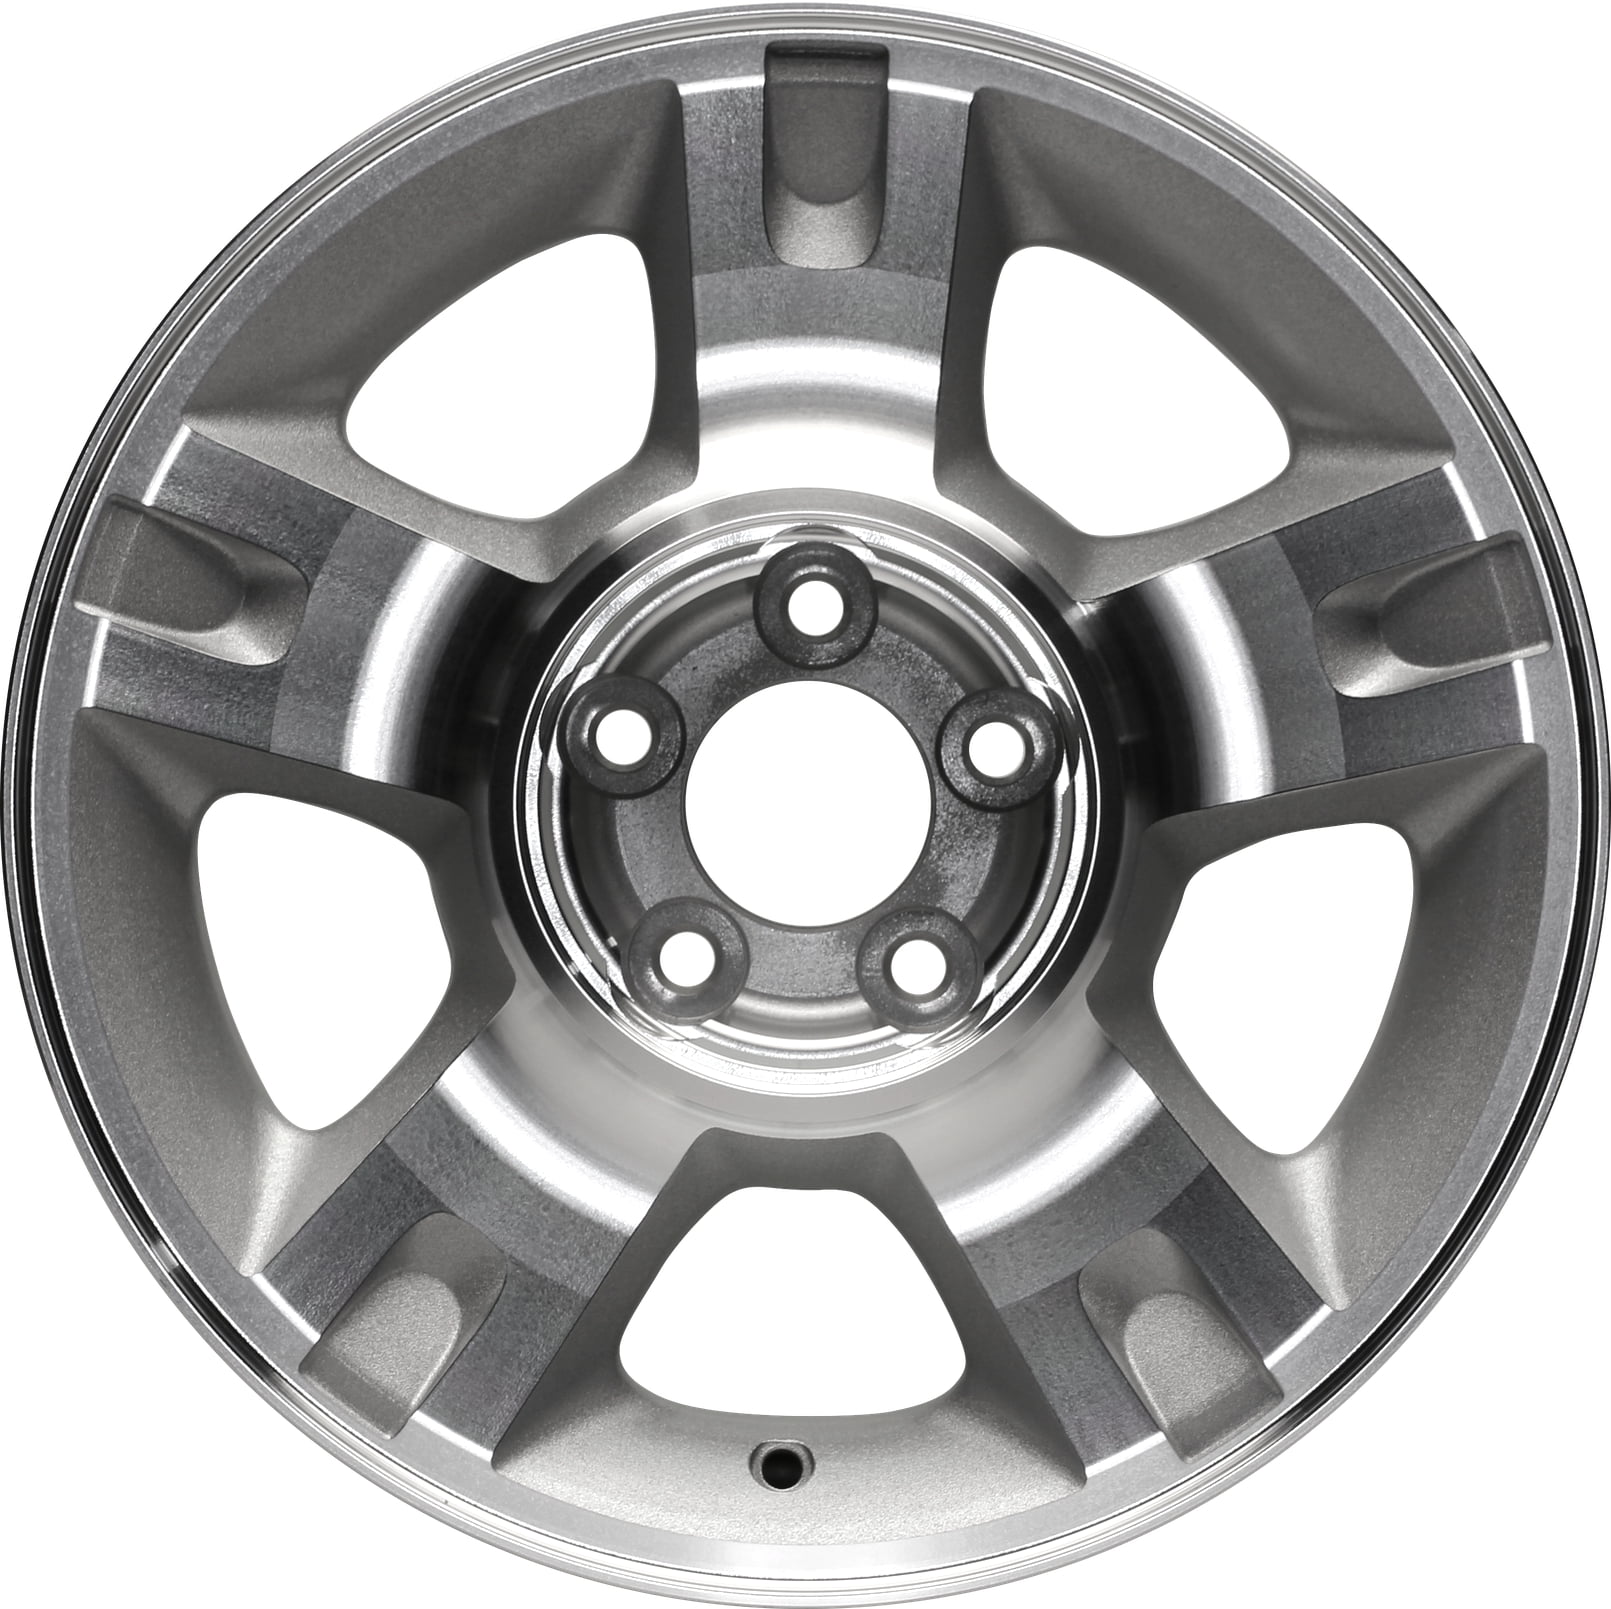 New Aluminum Wheel 16 Inch for 01-05 Ford Explorer 16x7 Rim 5 Lug 114 ...